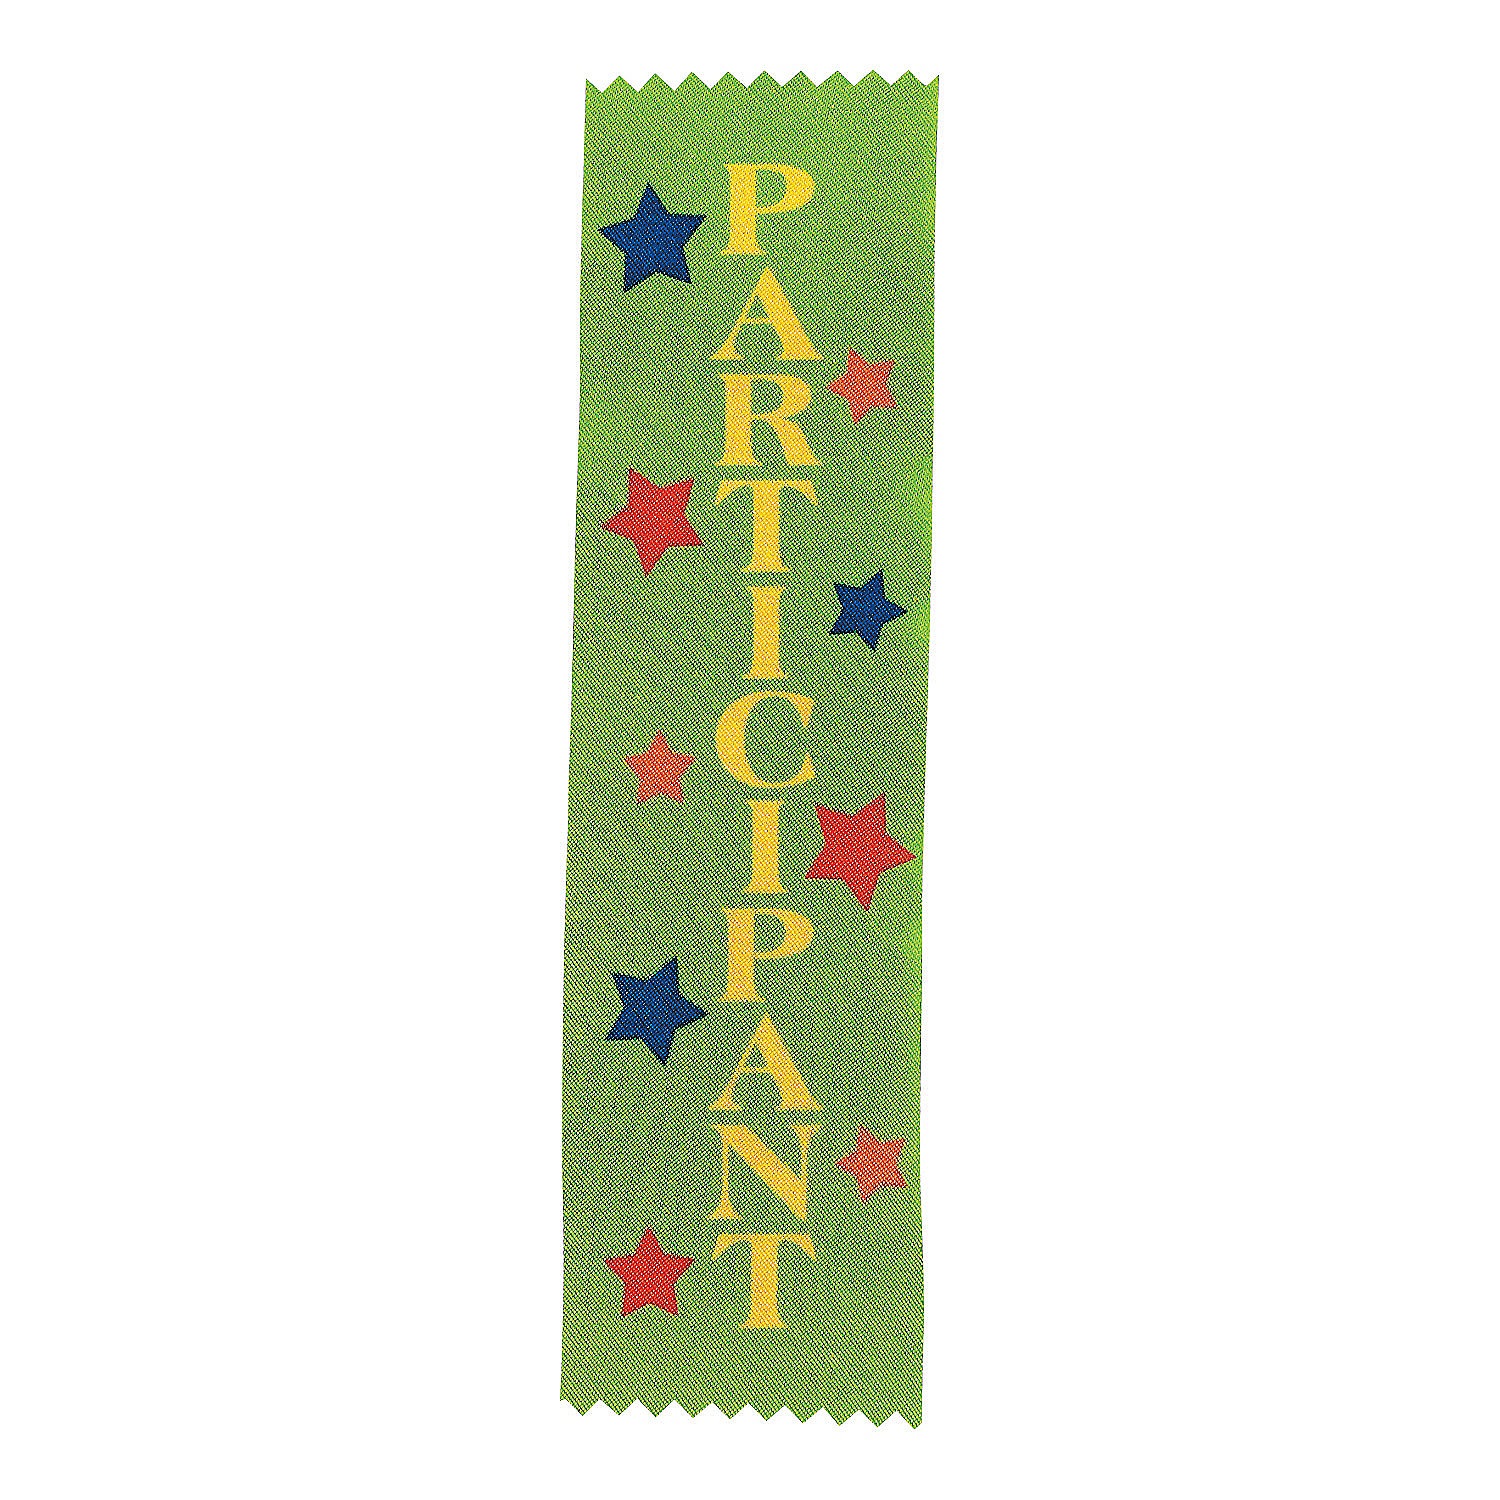 participant-green-award-ribbons-12-pc-_12_2125a